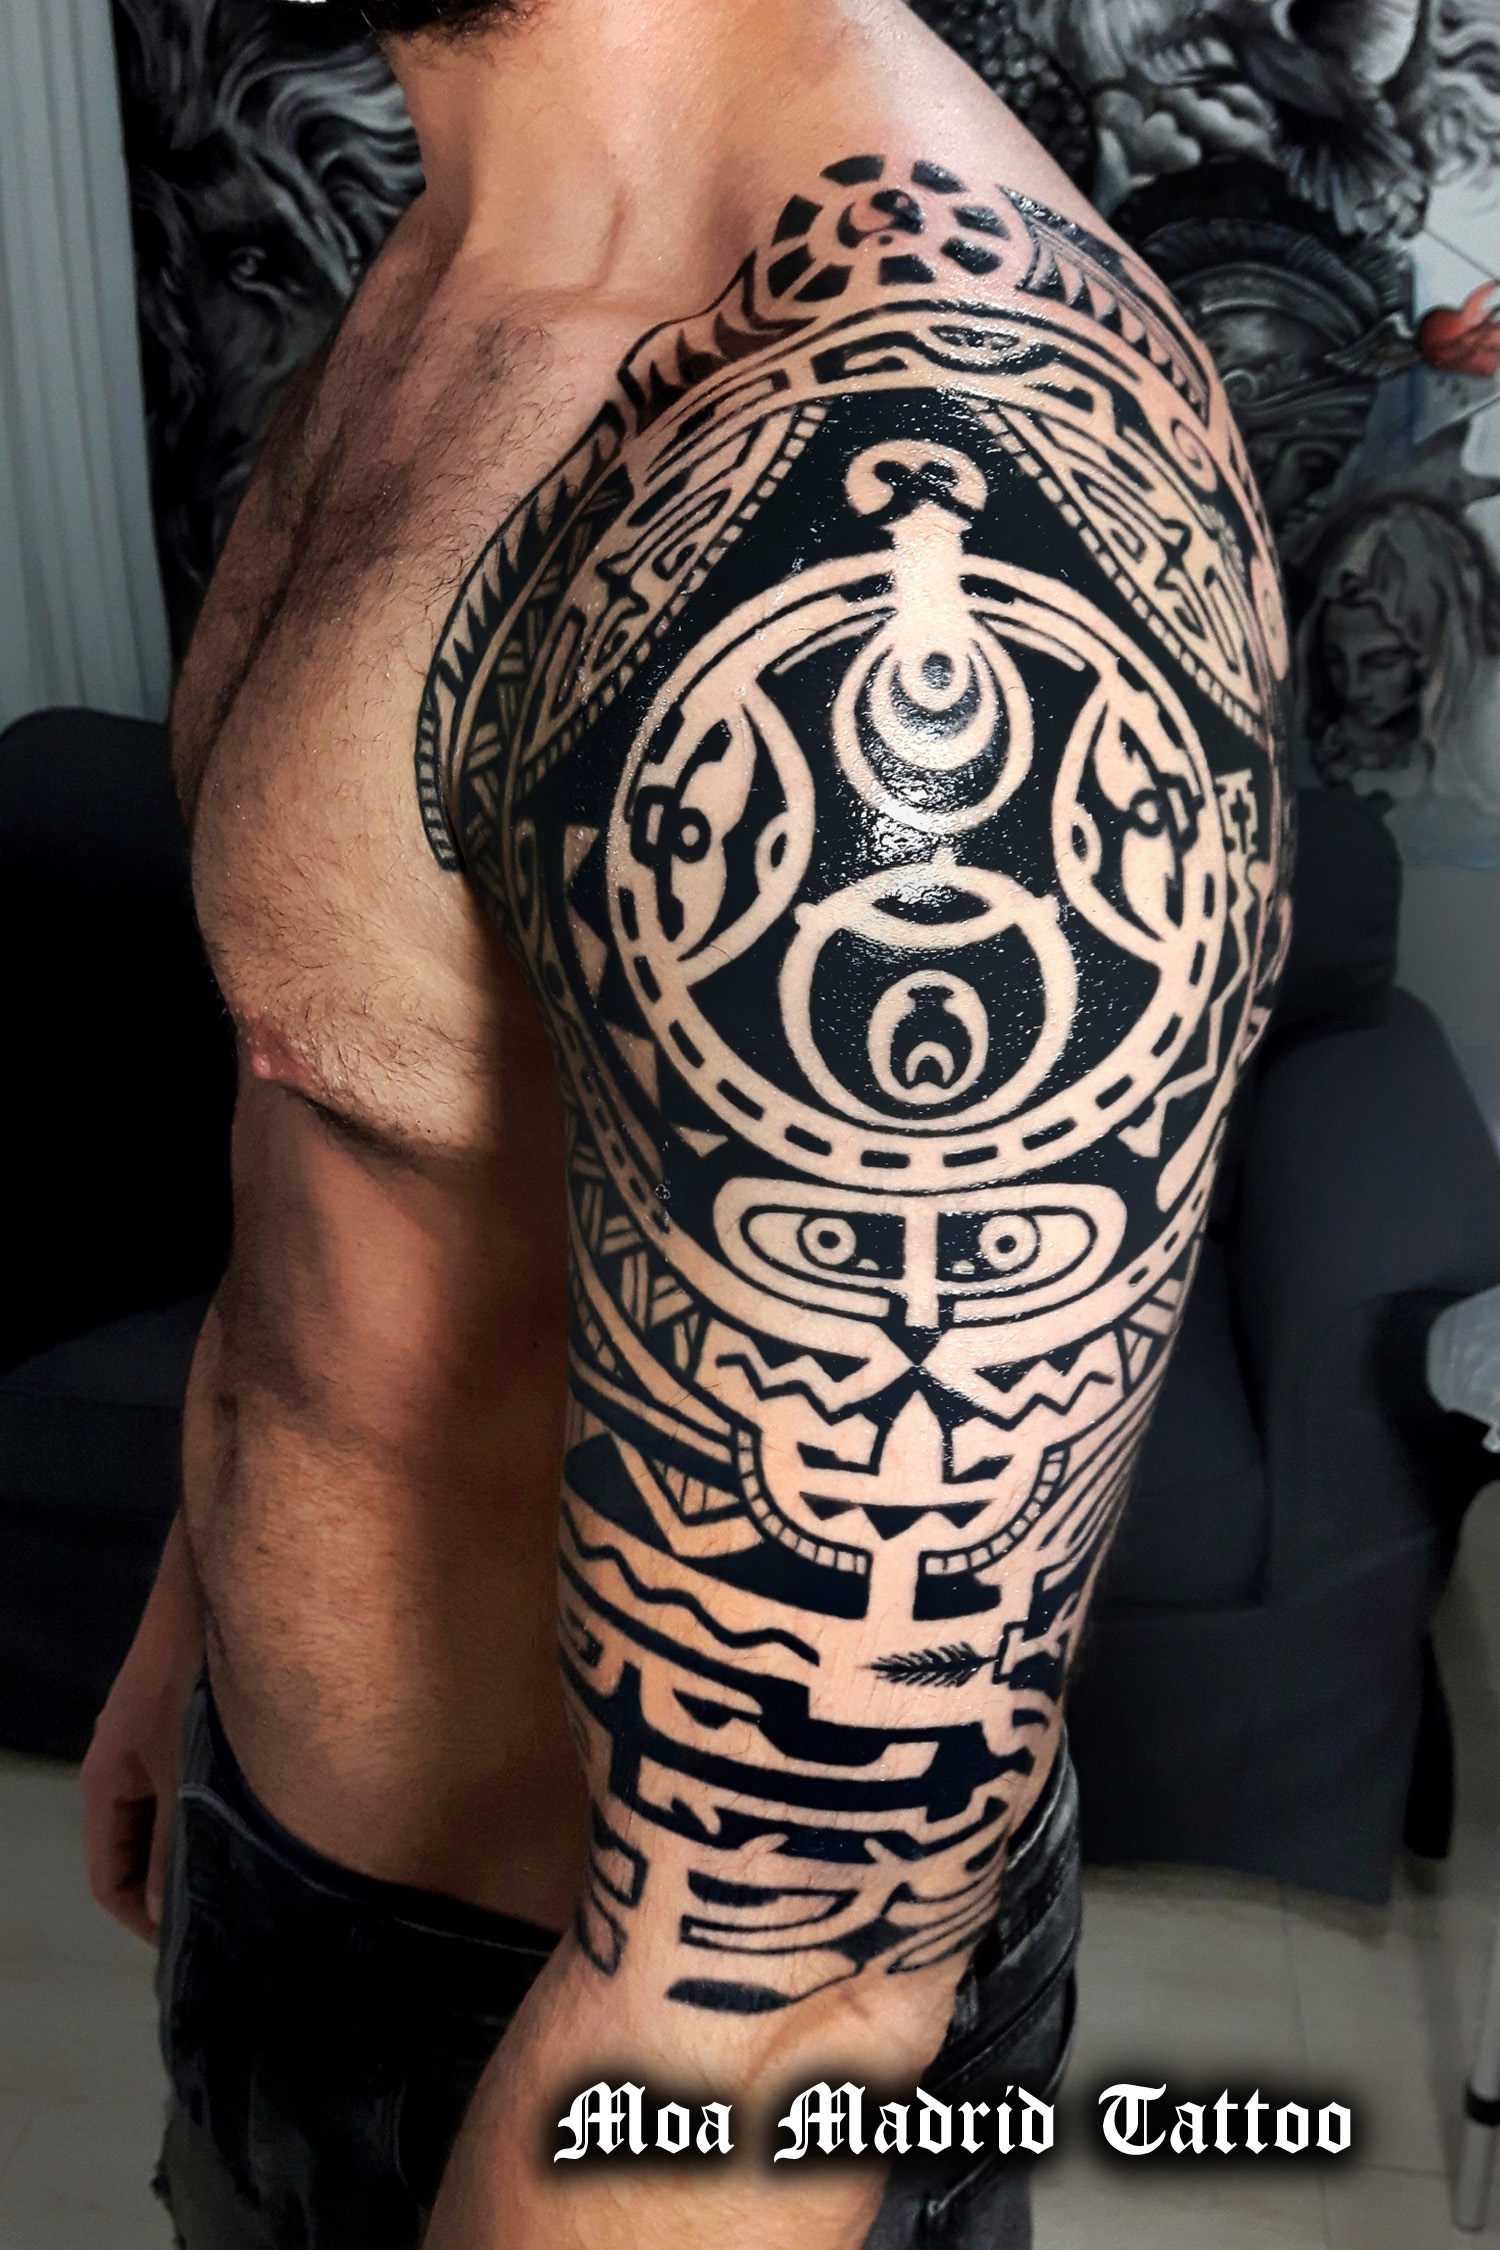 Tatuaje maorí 'The Rock' en brazo y hombro